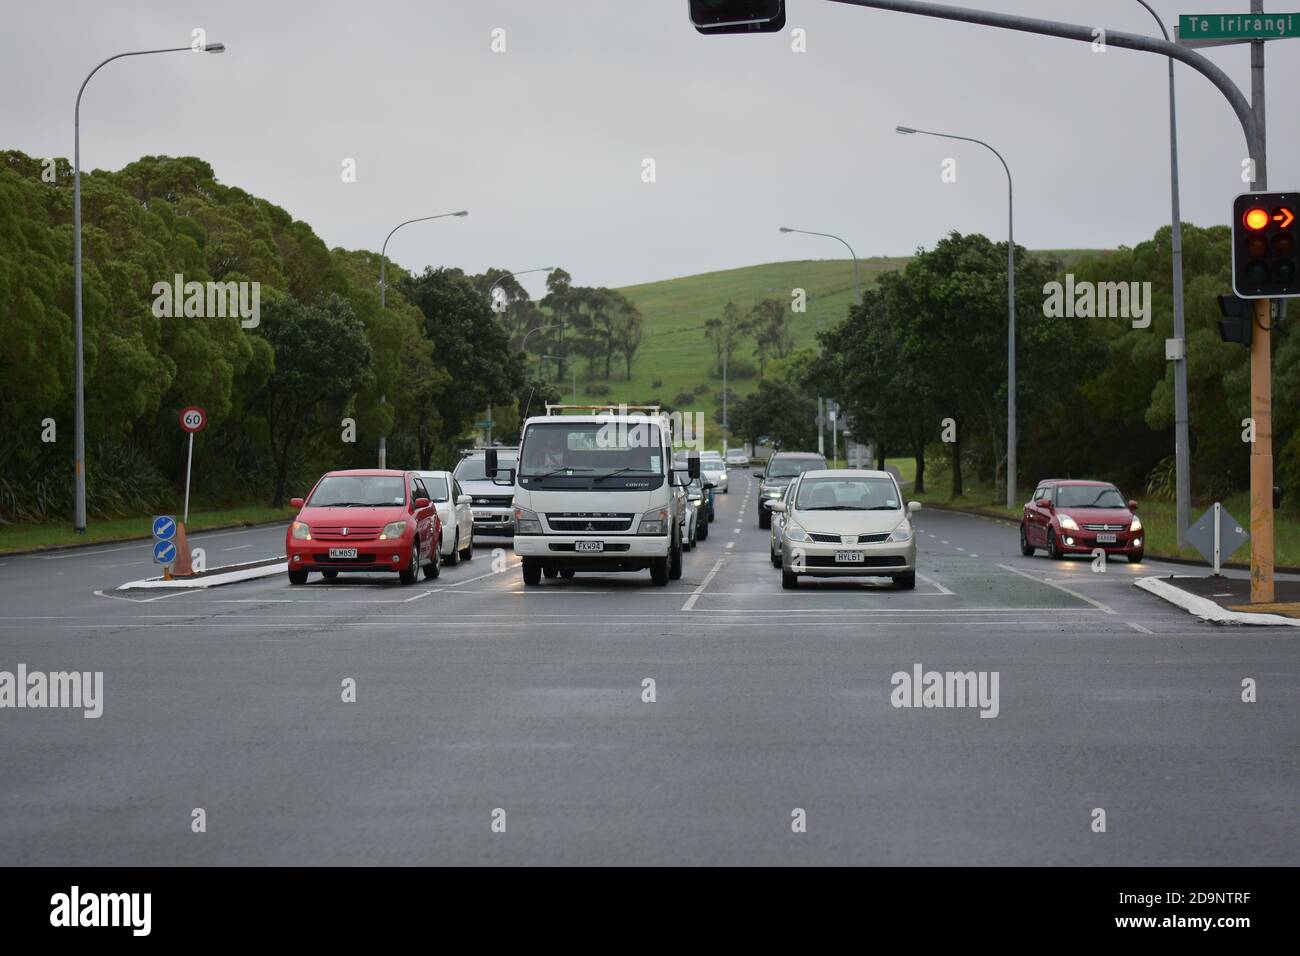 AUCKLAND, NUEVA ZELANDA - 05 de noviembre de 2020: Vista frontal de los coches pararon en el semáforo de Smales Road desde Re Irirangi Drive Foto de stock